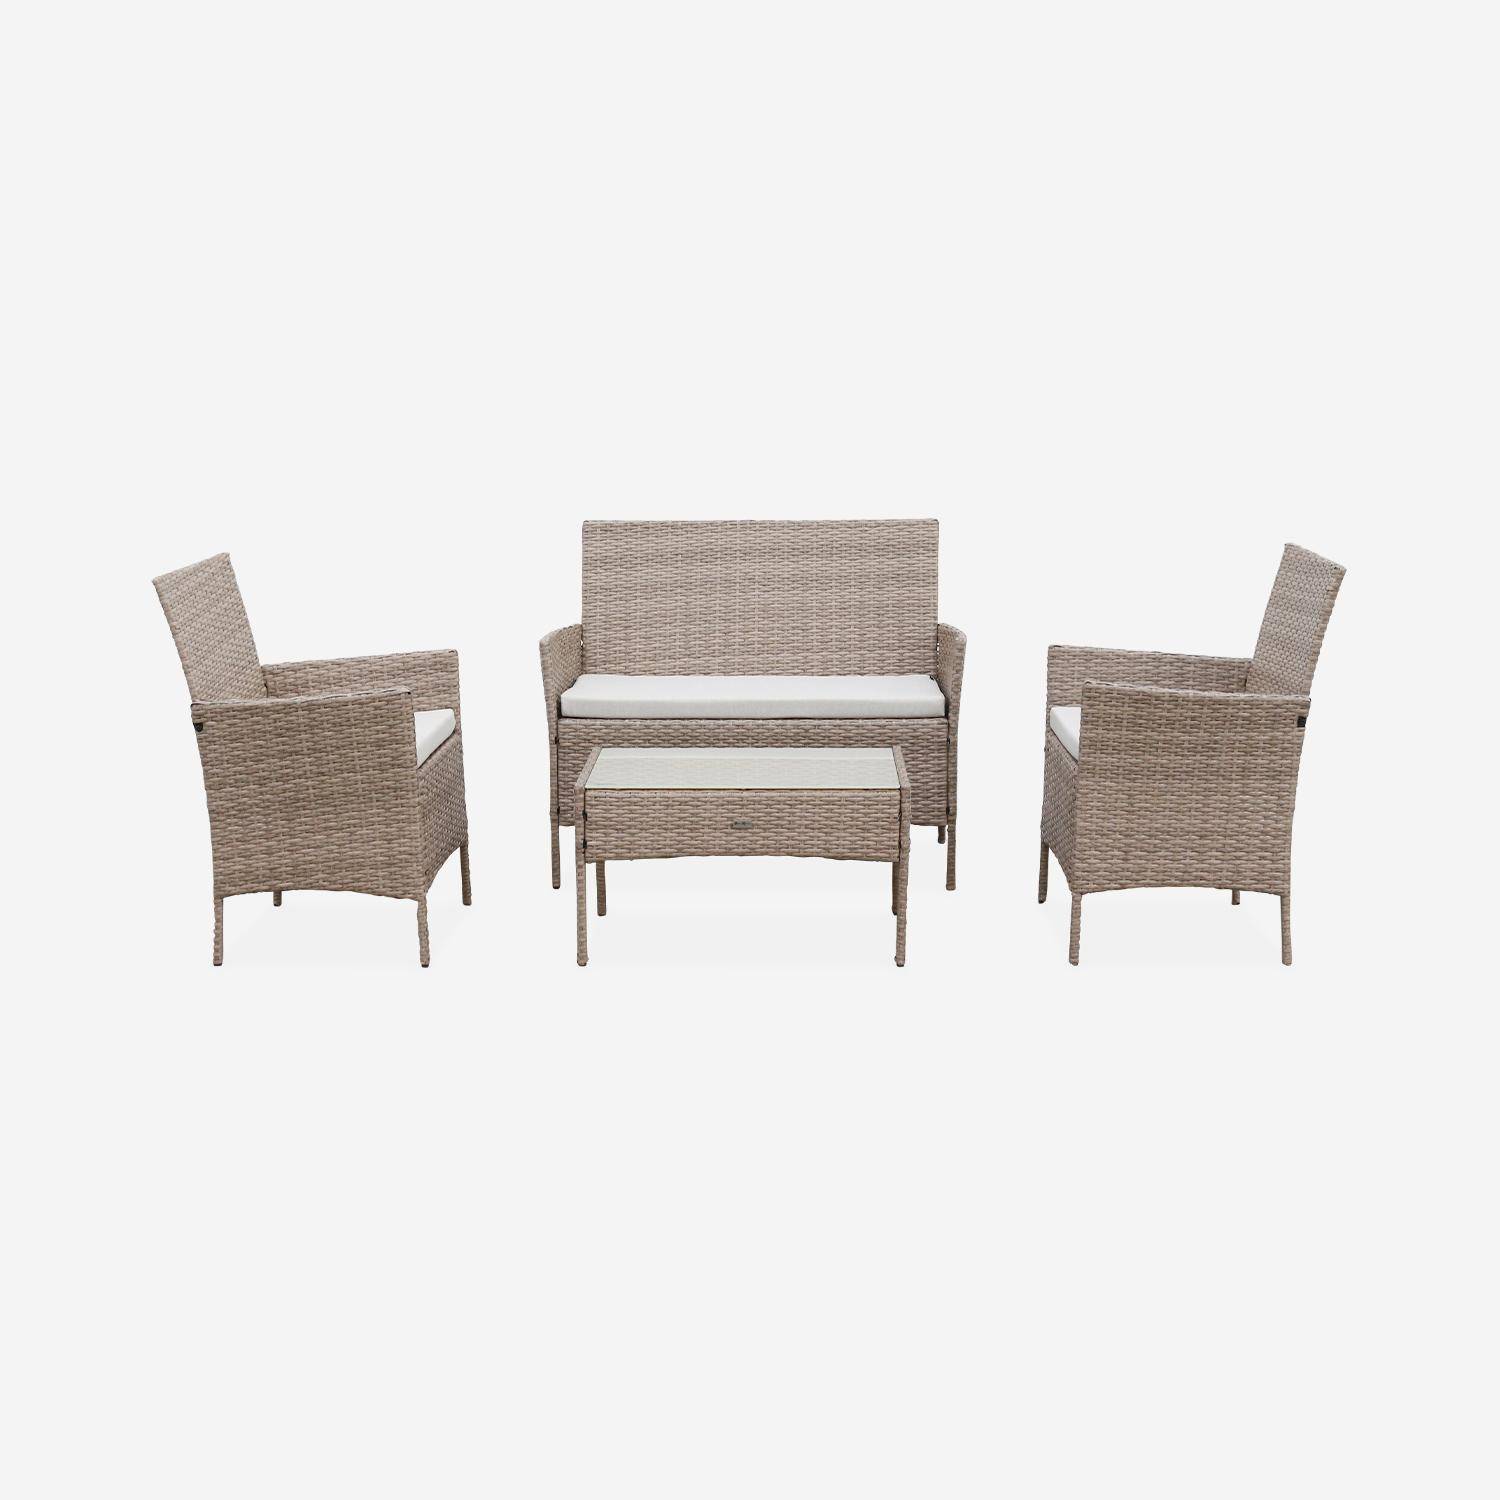 Tuinset Moltès - 4 plaatsen - wicker - 2 fauteuils, 1 sofa en een salontafel, naturel/beige,sweeek,Photo4